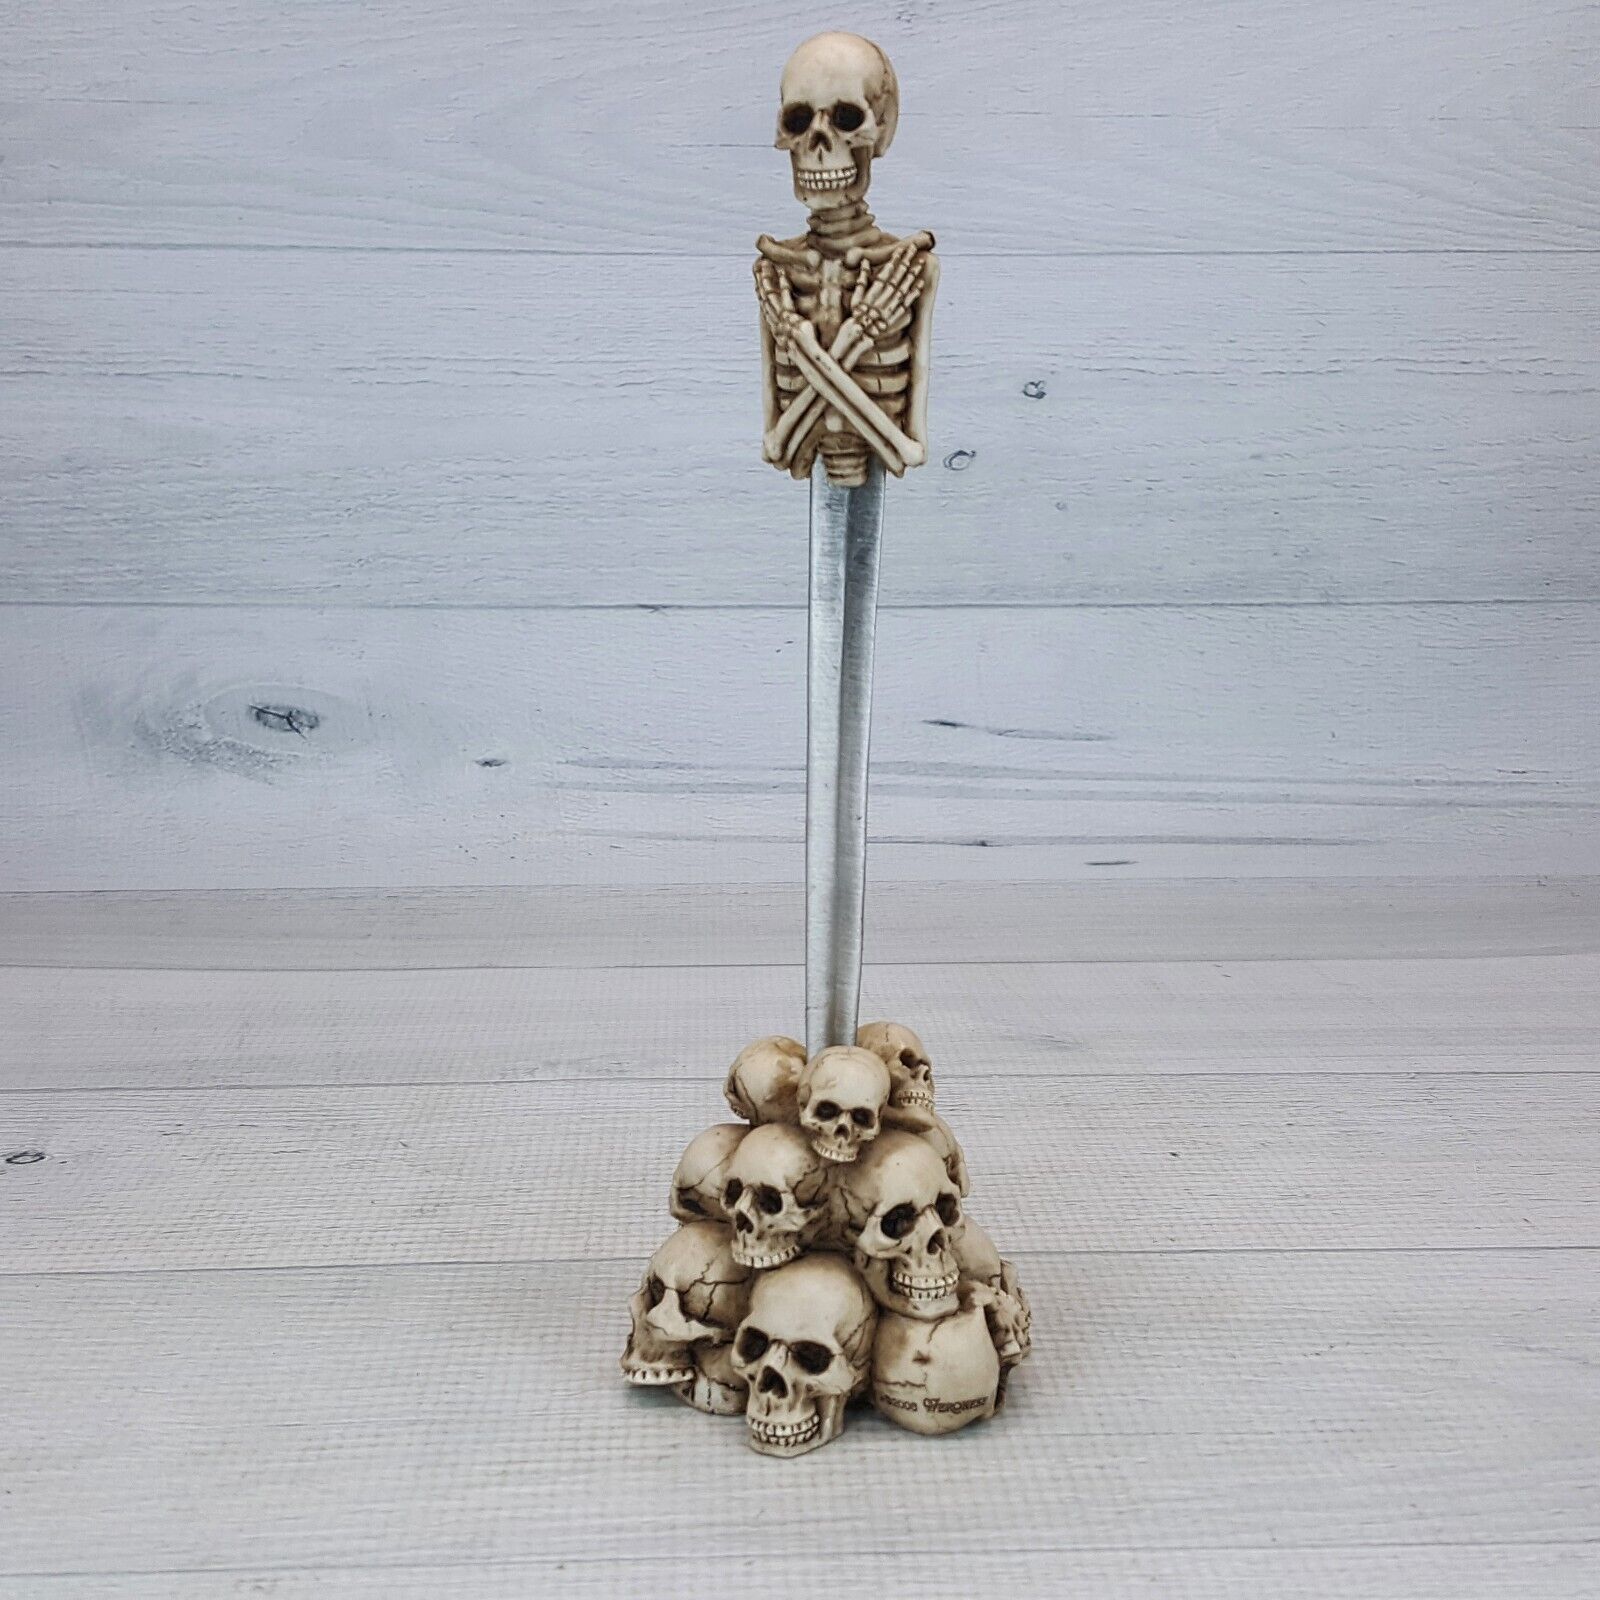 Veronese Skeleton Letter Opener Pile of Skulls Holder Desk Figure Gothic Decor